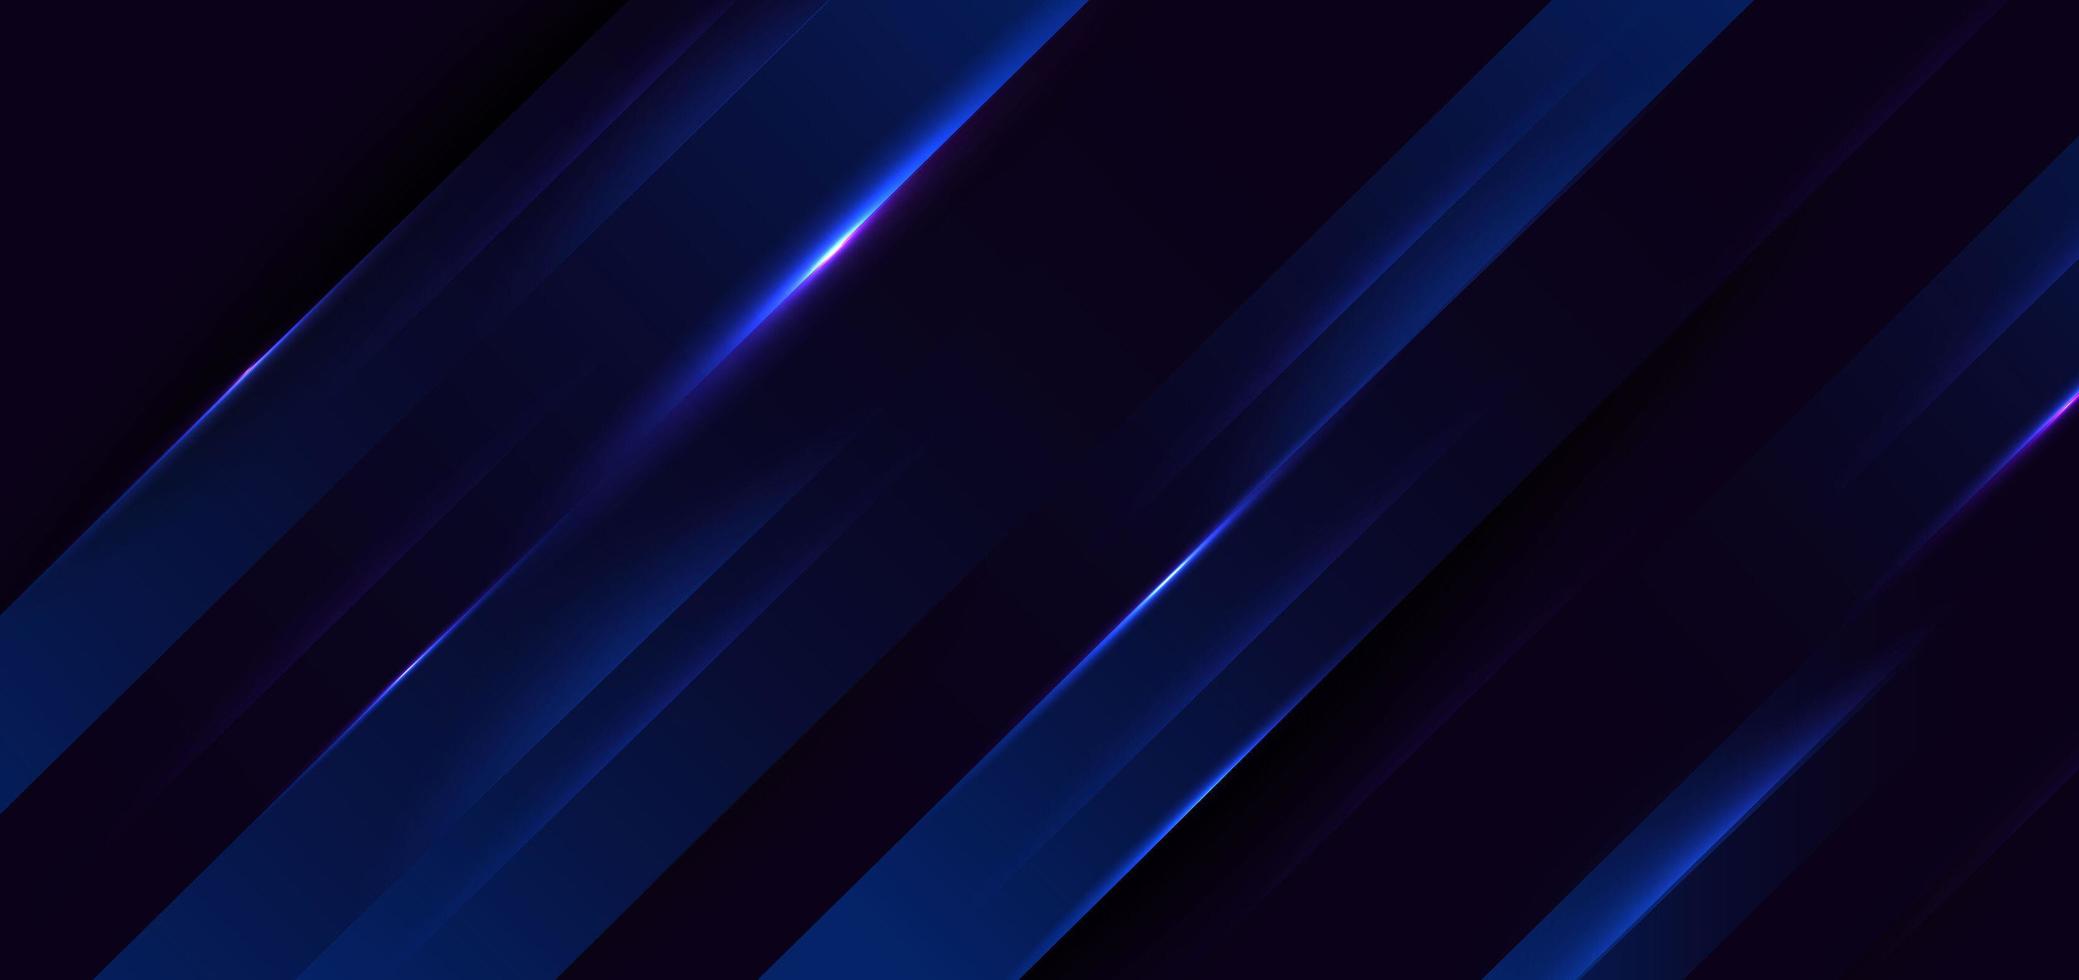 astratto moderno blu scuro elegante diagonale su sfondo scuro con illuminazione. vettore